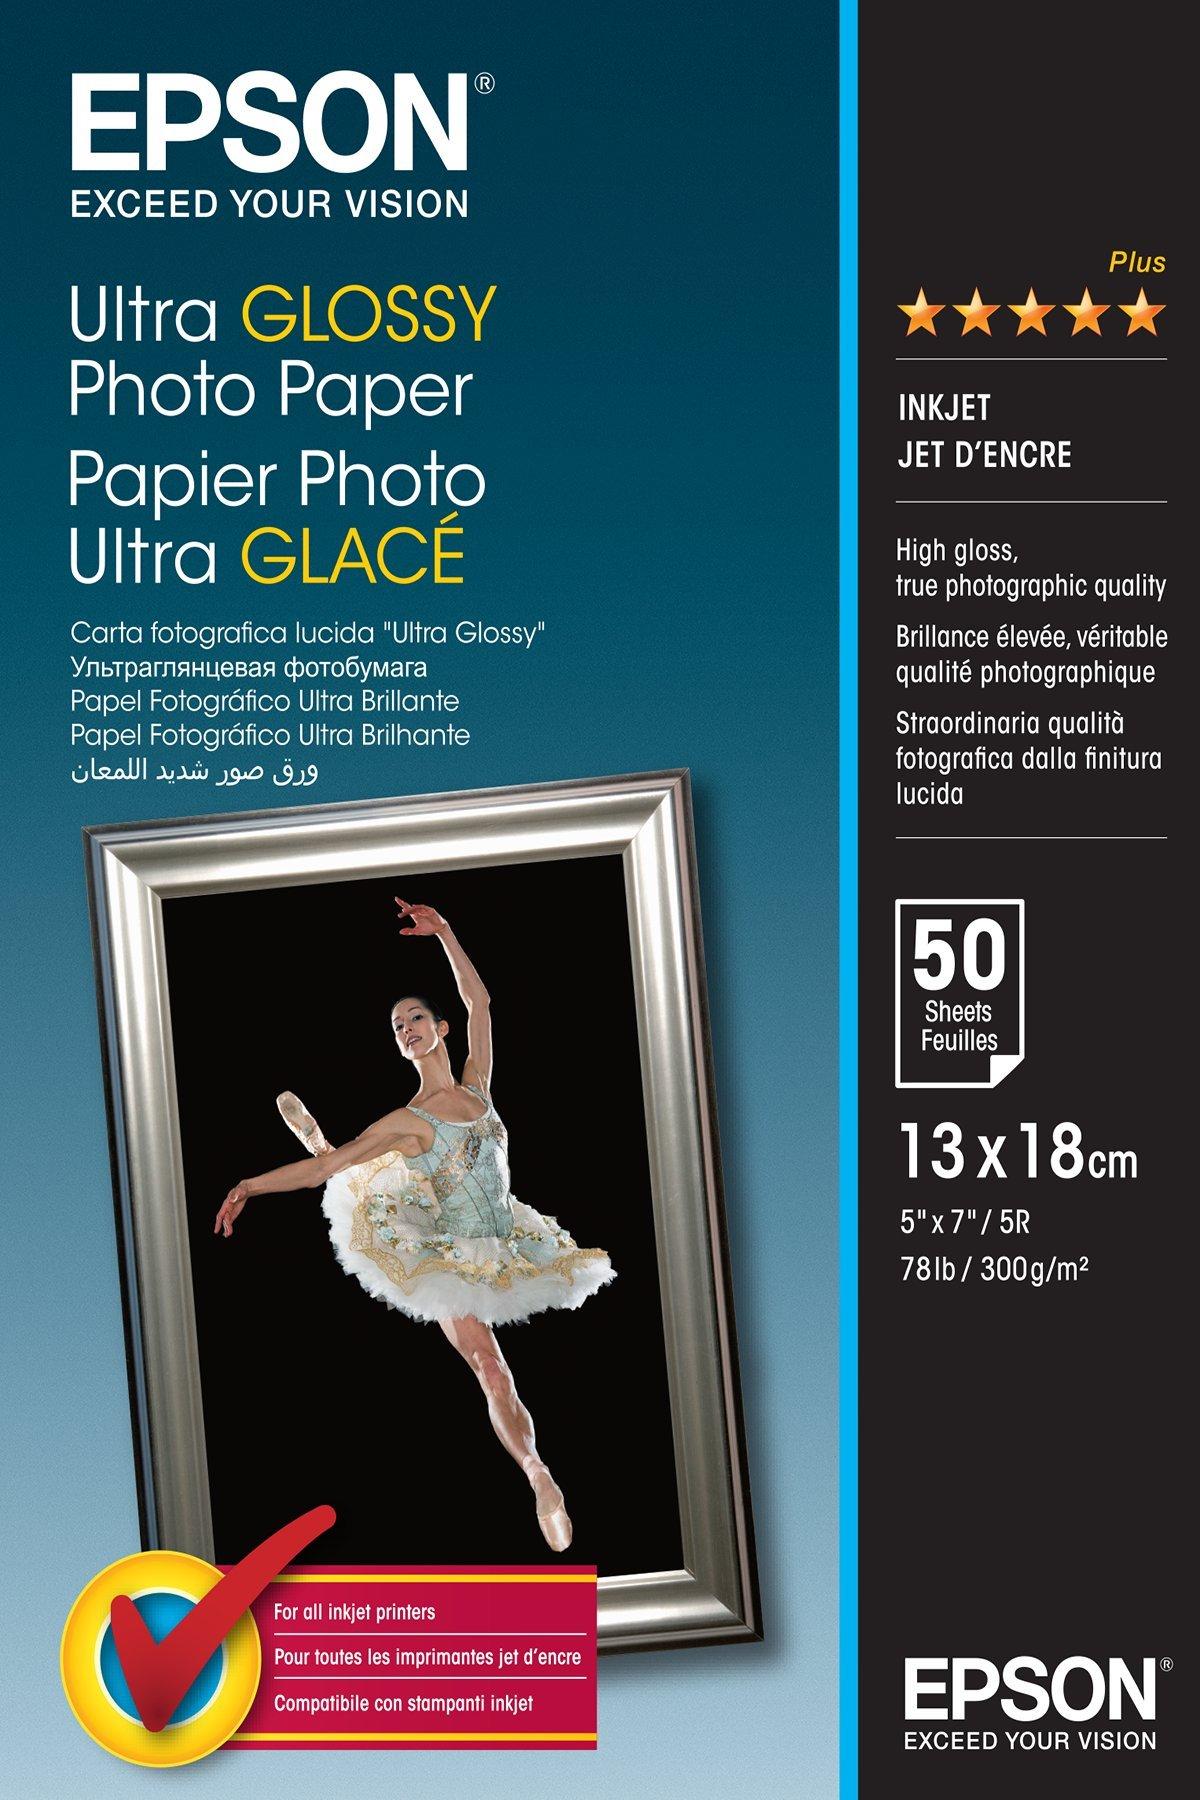 Ultra Glossy Photo Paper - 13x18cm - 50 Fogli, Carte e Supporti, Inchiostri & Carta, Prodotti